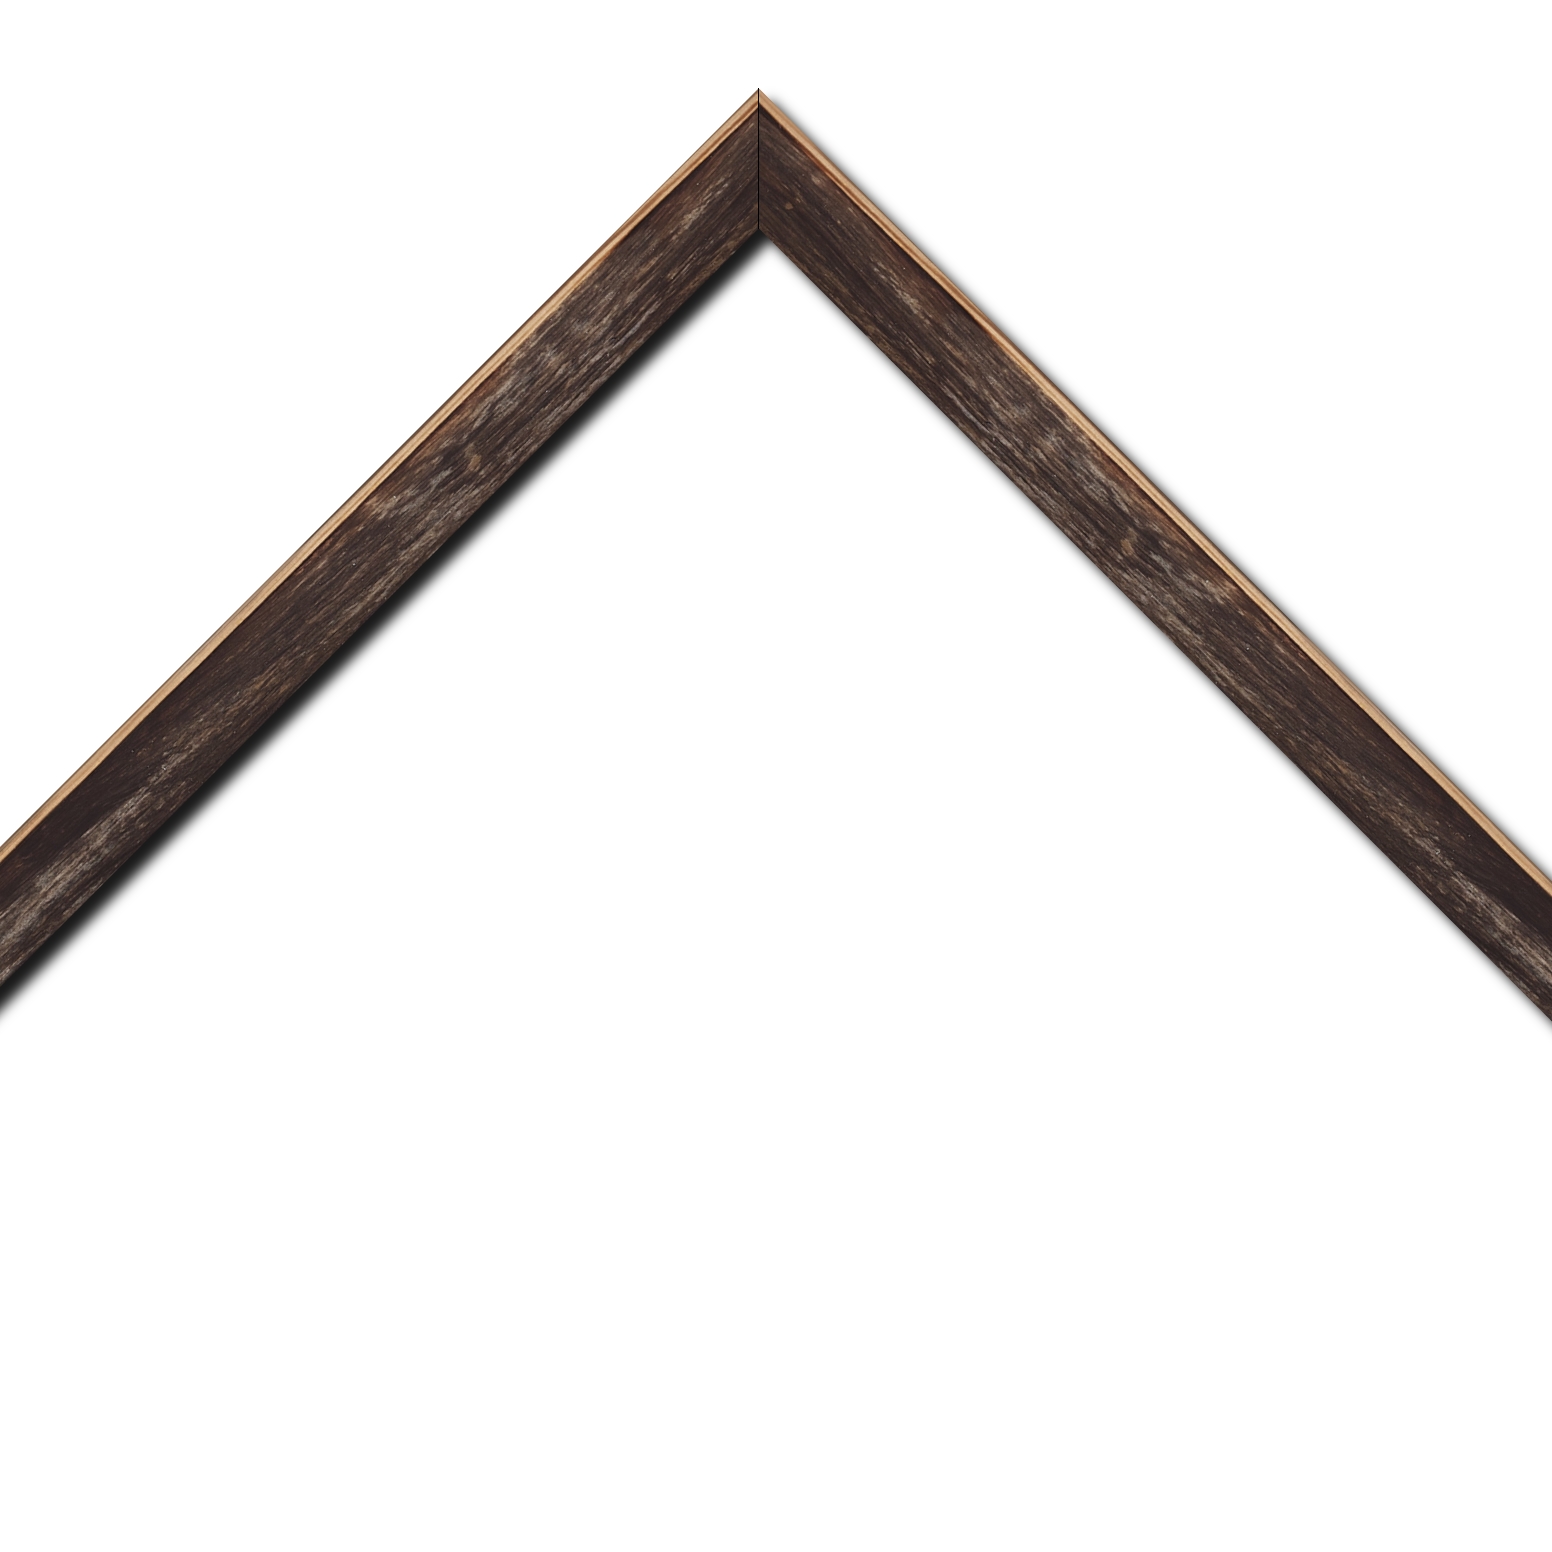 Baguette bois profil arrondi en pente plongeant largeur 2.4cm couleur noir ébène effet ressuyé, angle du cadre extérieur filet naturel